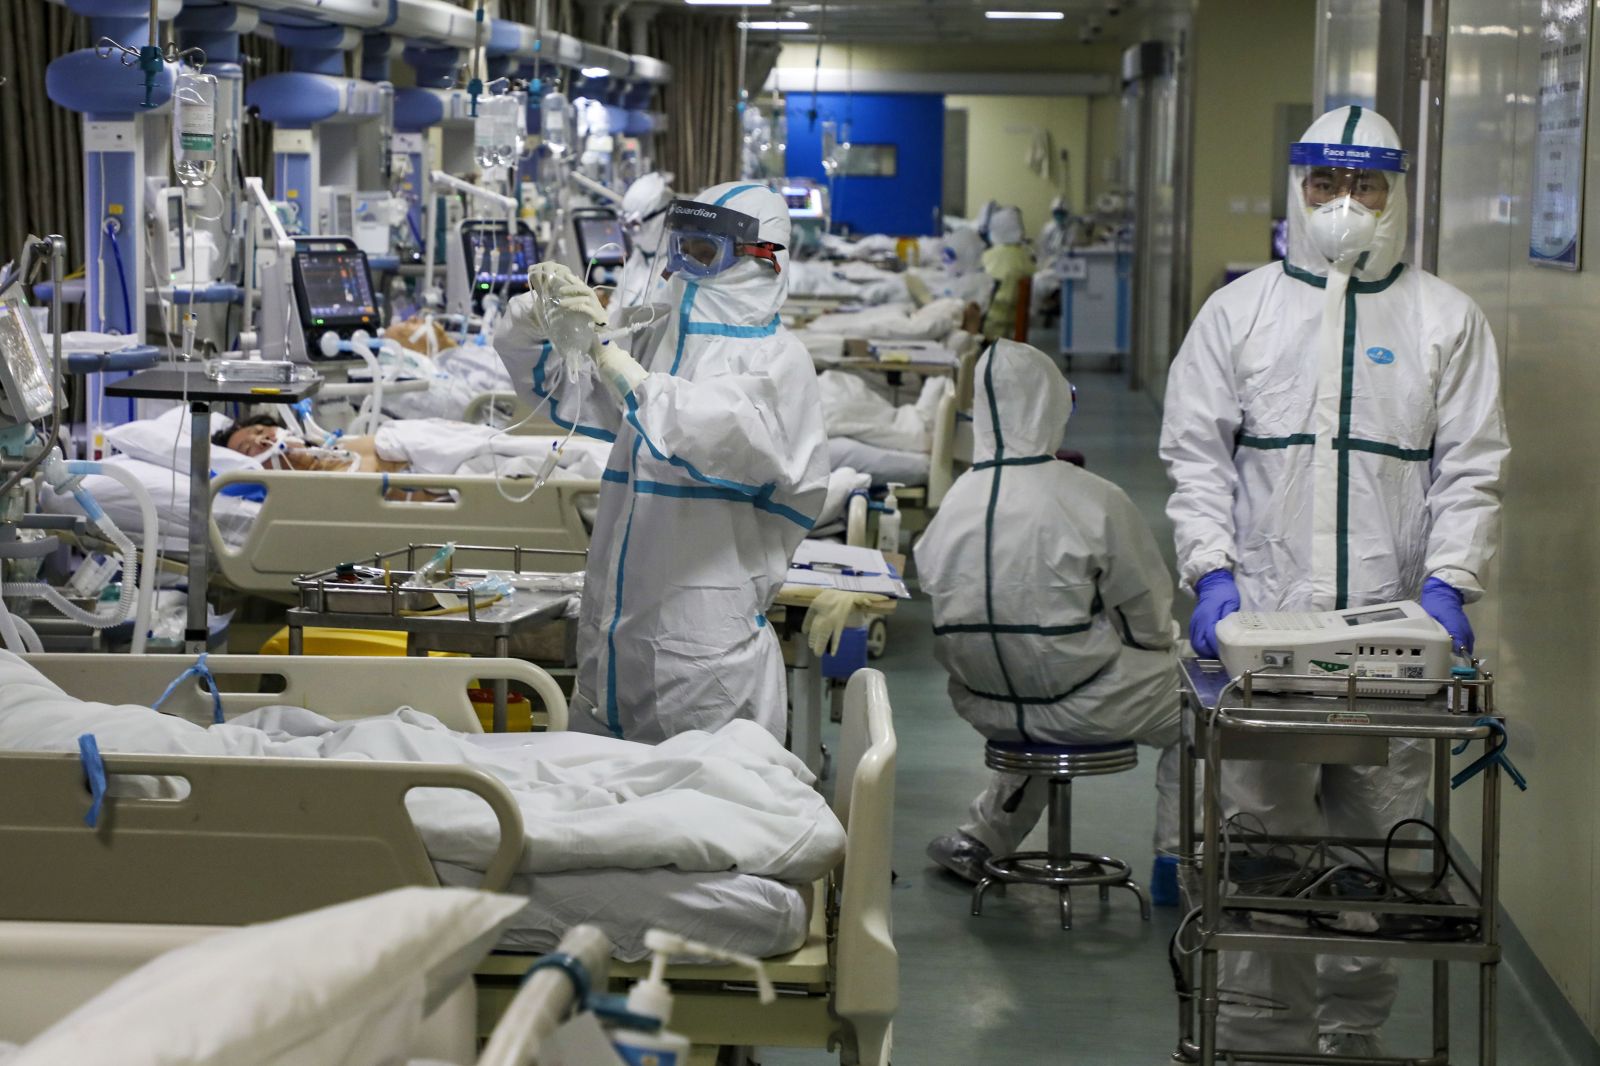 NAŽIVO: Slovensko má stále 32 nakazených. Čínski lekári hlásia, že niektorí pacienti môžu mať poškodené pľúca aj po vyliečení